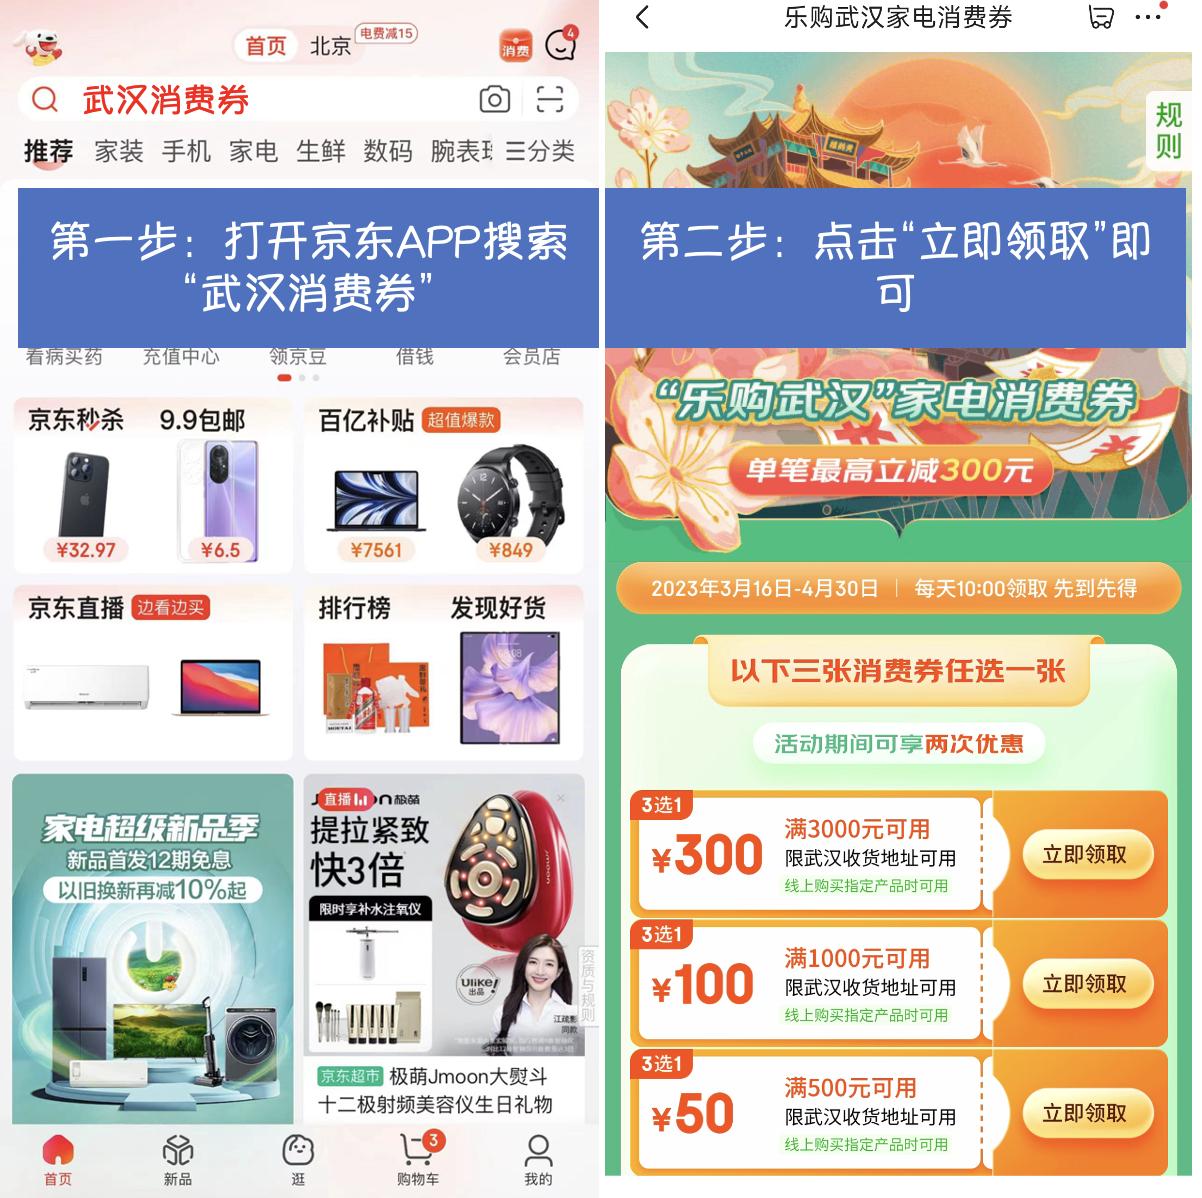 “乐购武汉”家电消费券在京东APP领取 买家电家居产品至高减300元.jpg